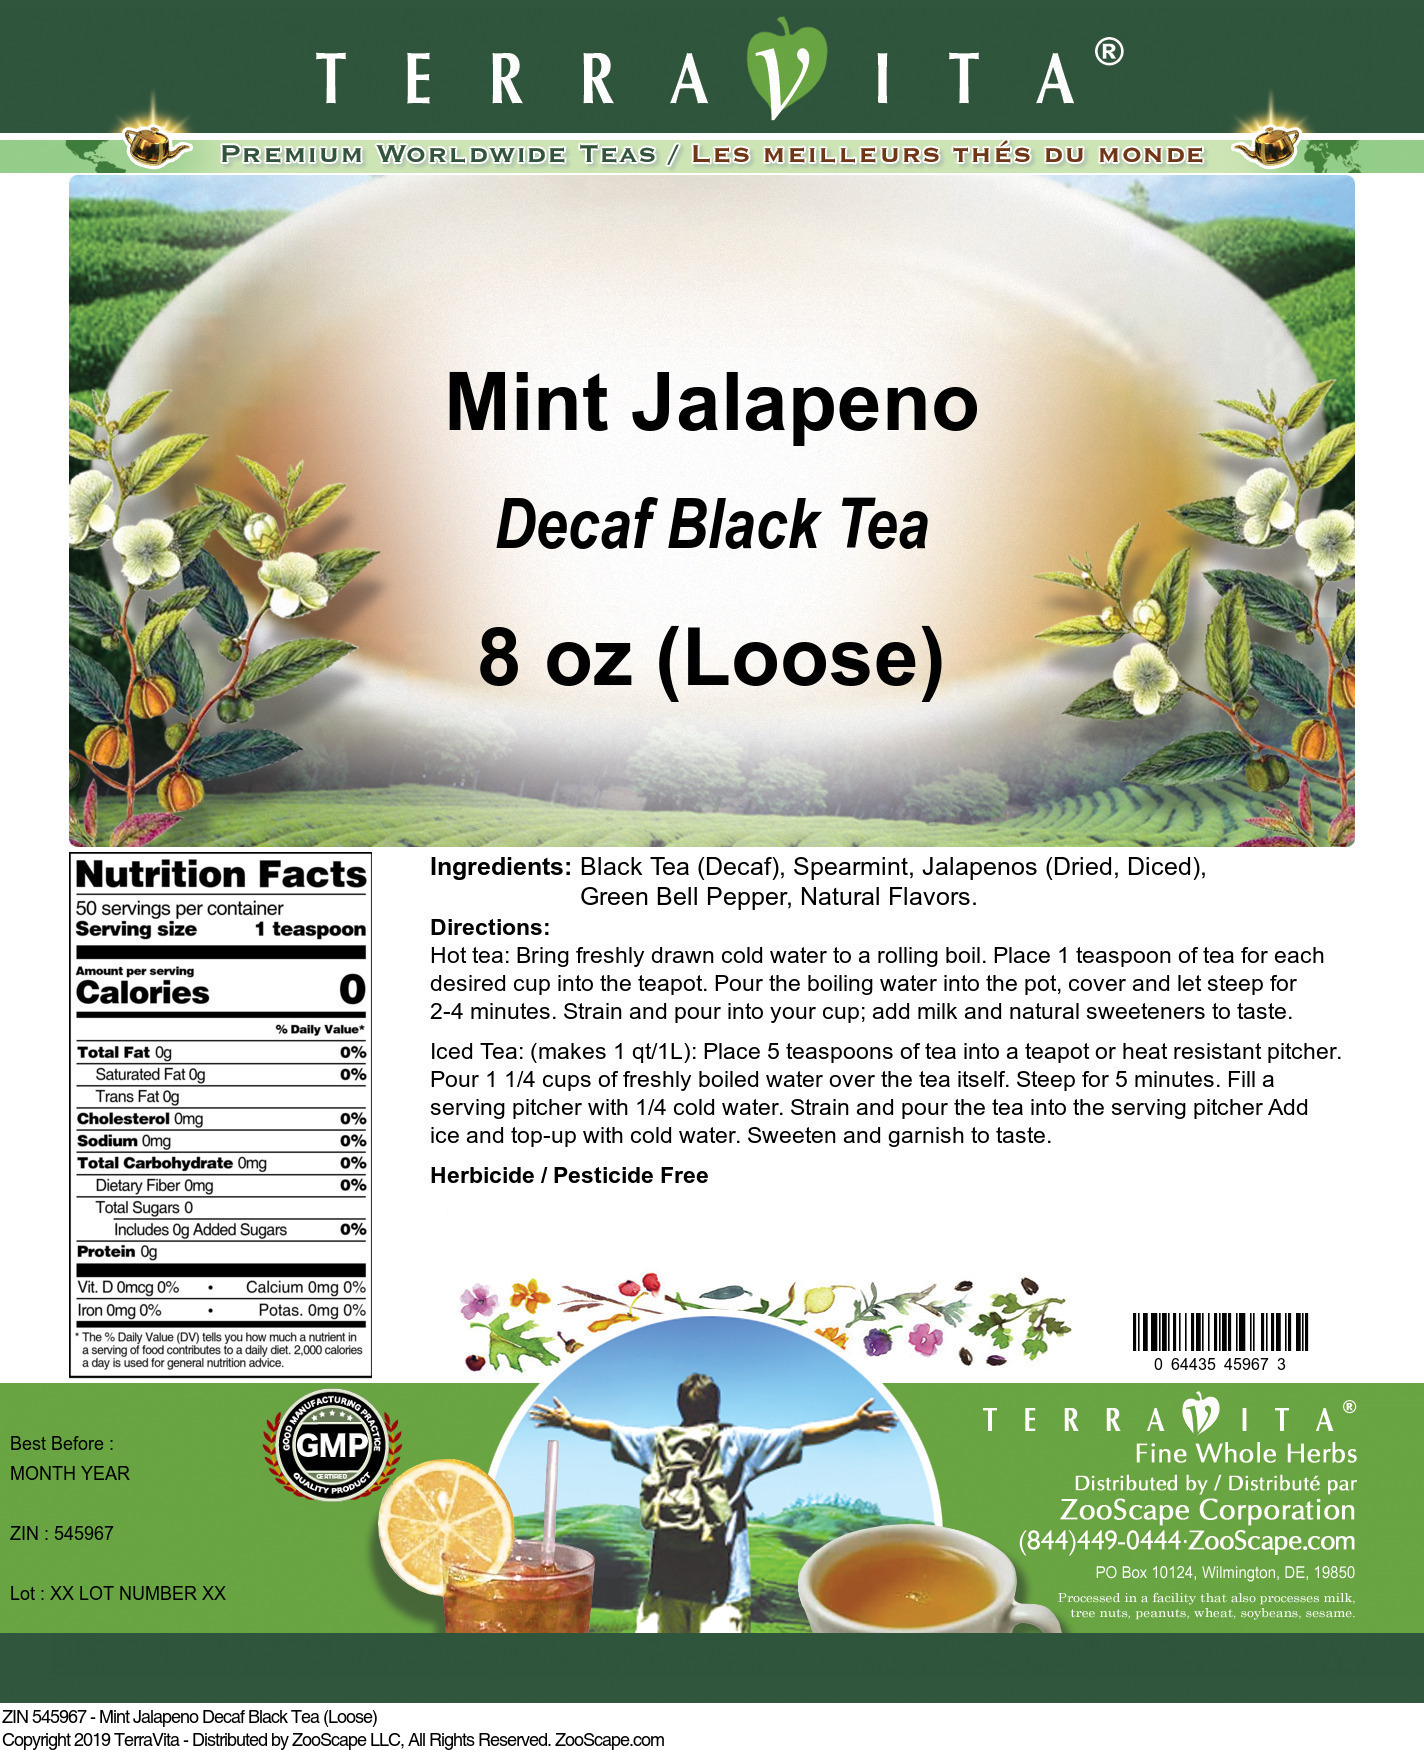 Mint Jalapeno Decaf Black Tea (Loose) - Label